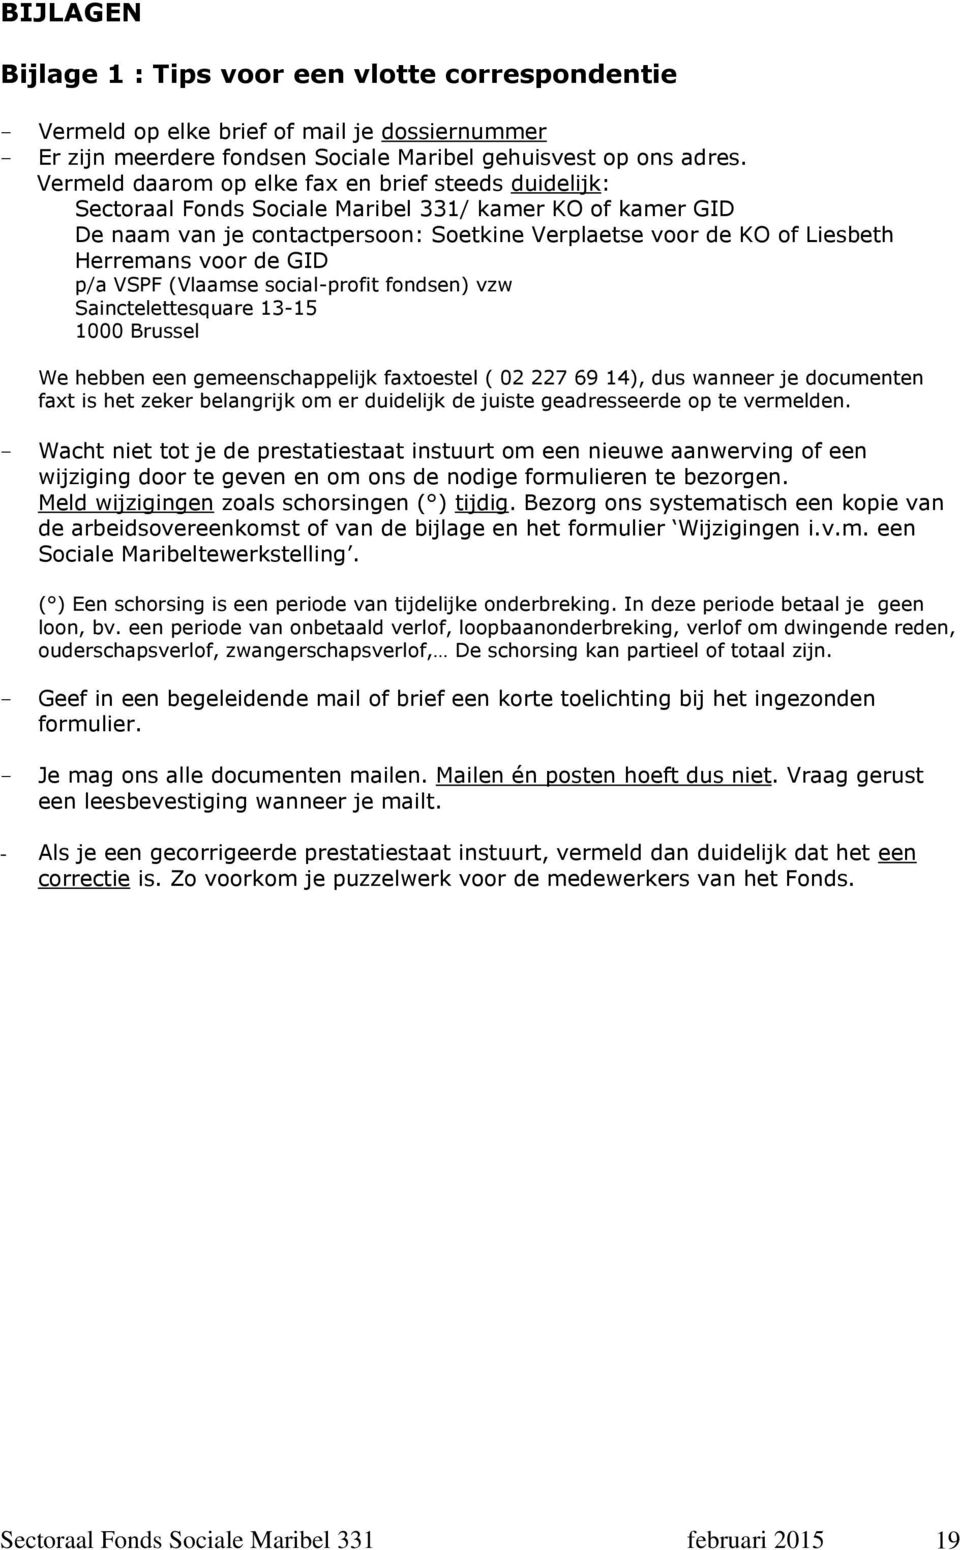 voor de GID p/a VSPF (Vlaamse social-profit fondsen) vzw Sainctelettesquare 13-15 1000 Brussel We hebben een gemeenschappelijk faxtoestel ( 02 227 69 14), dus wanneer je documenten faxt is het zeker